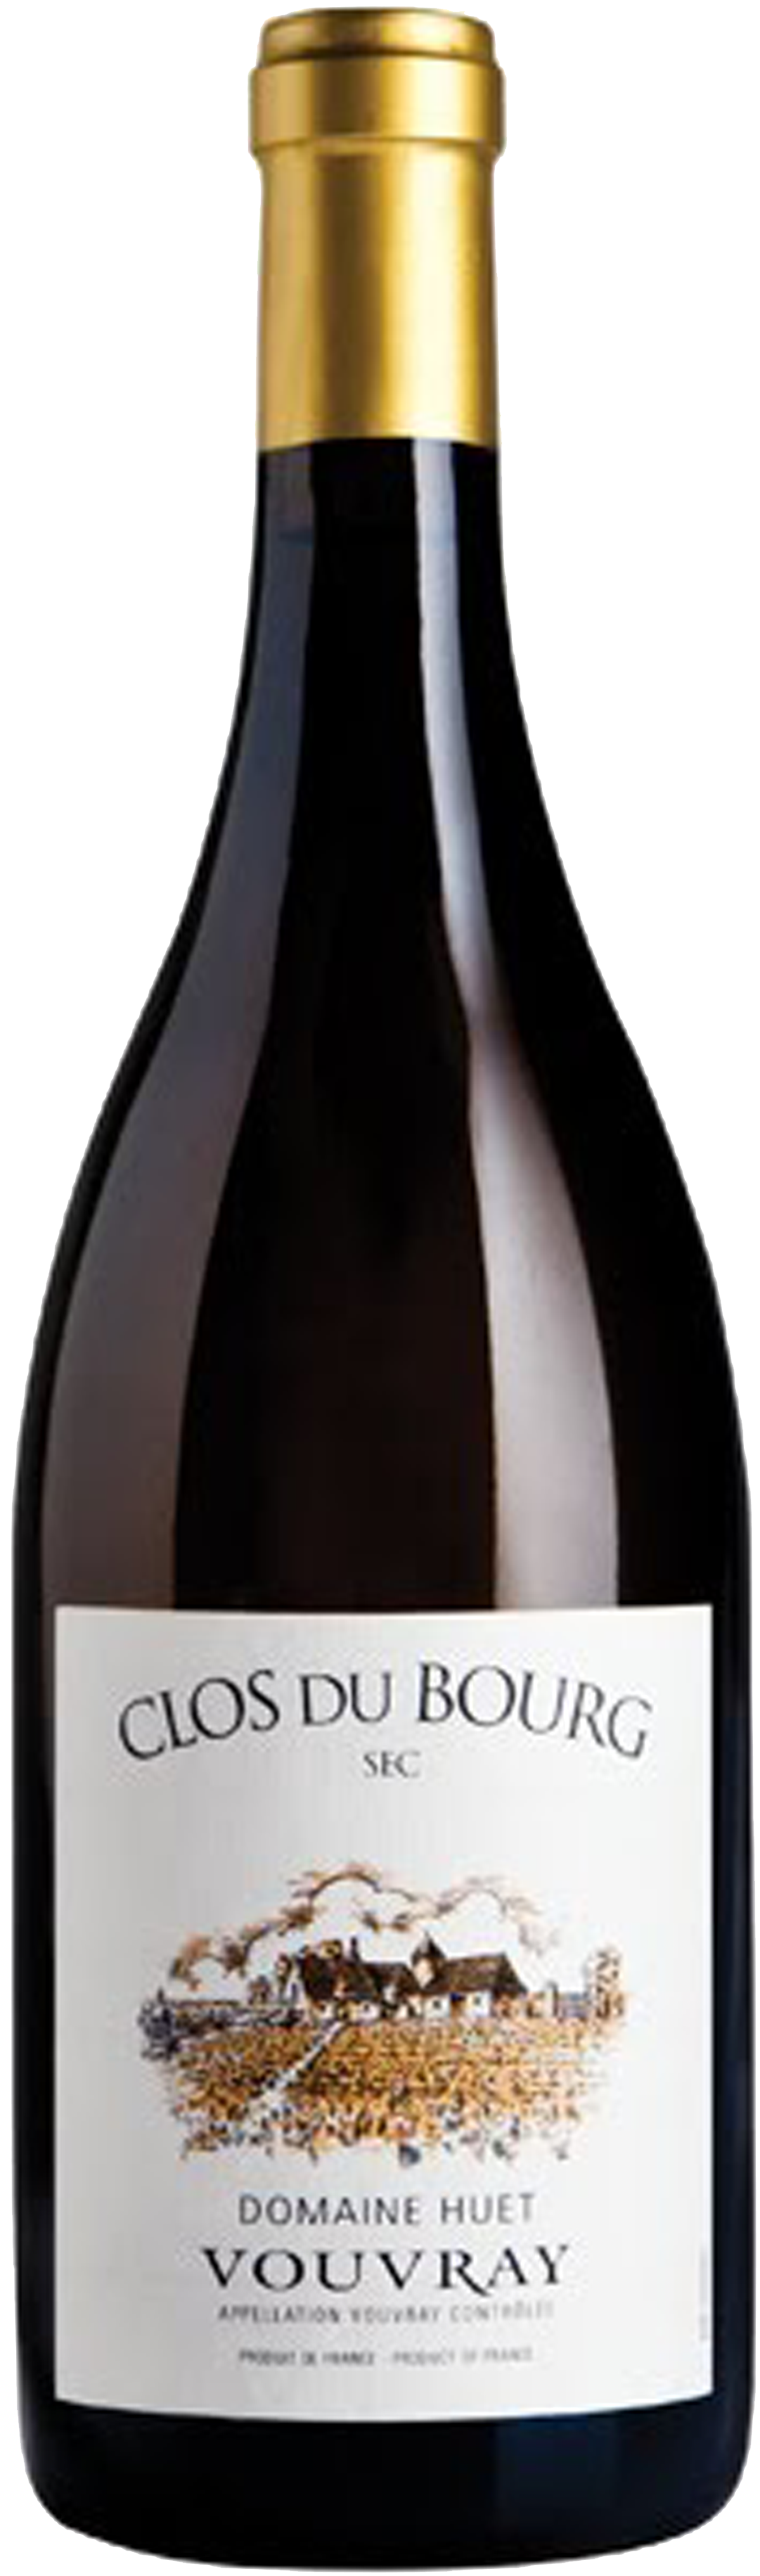 Bottle shot of 2012 Vouvray Clos du Bourg Sec